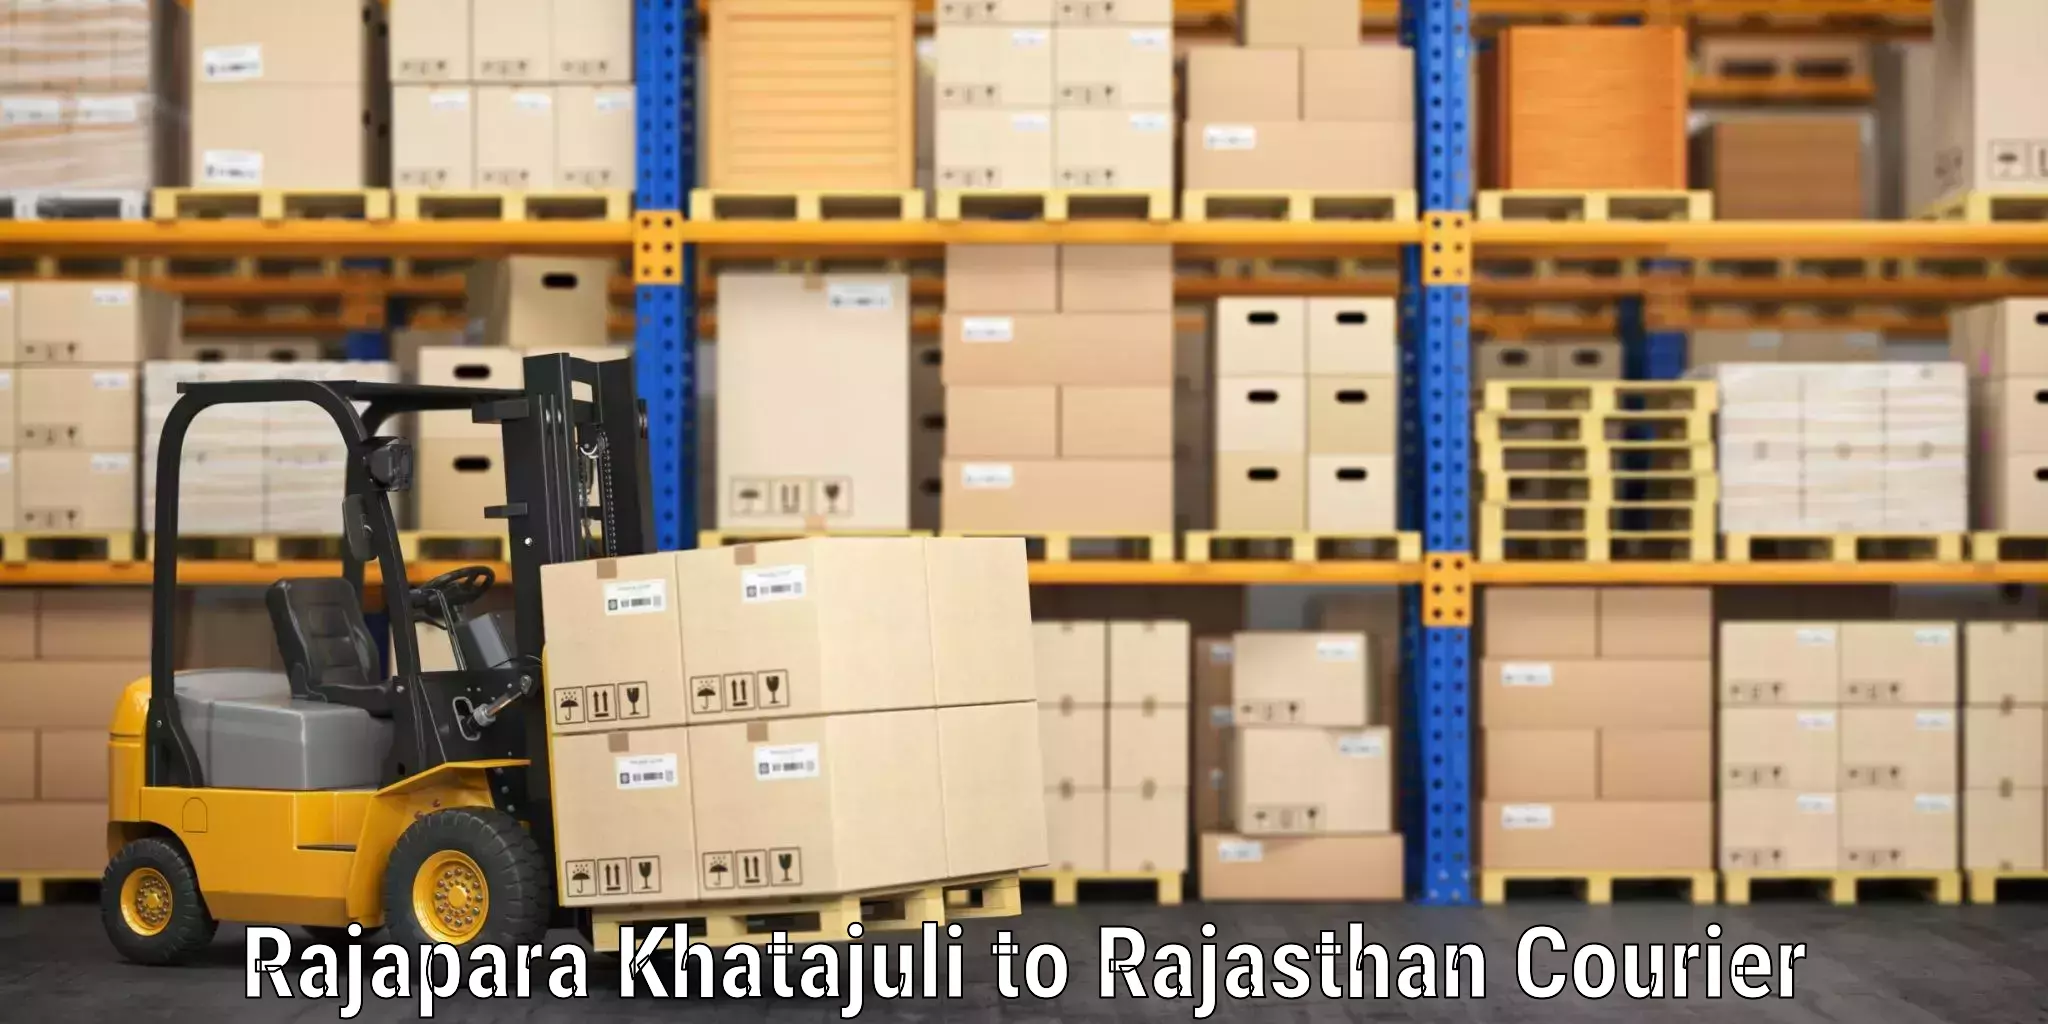 Personal effects shipping Rajapara Khatajuli to Kushalgarh